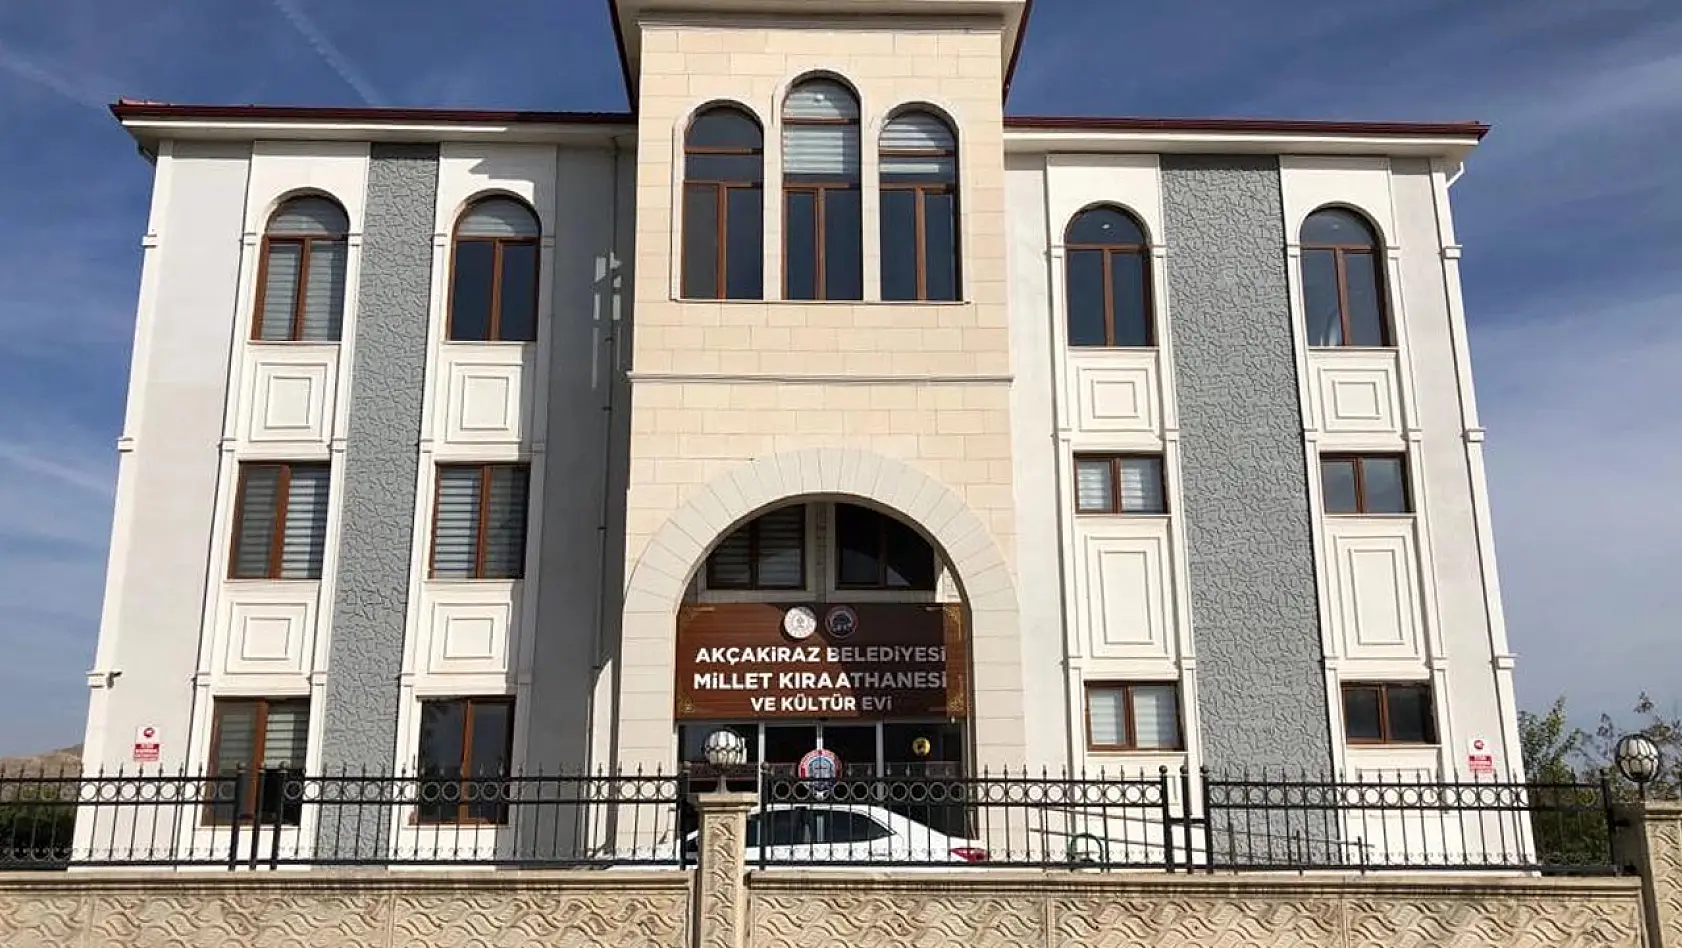 2019 Yerel Seçimlerinde Akçakiraz'da Hangi Parti Kaç Oy Aldı?